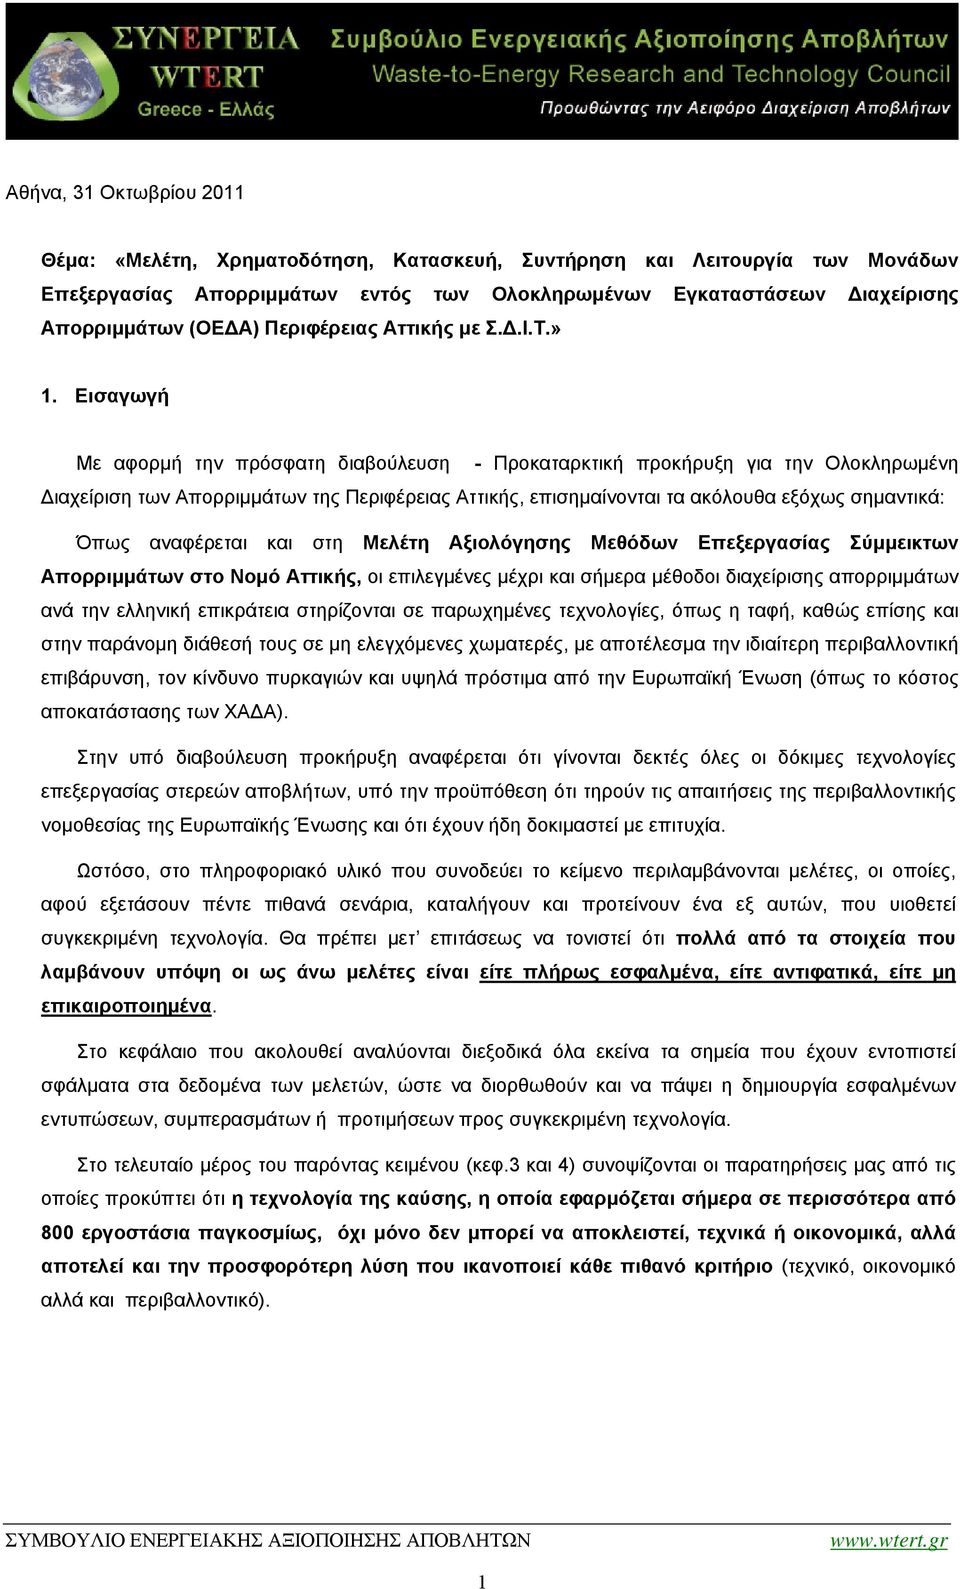 Εισαγωγή Με αφορμή την πρόσφατη διαβούλευση - Προκαταρκτική προκήρυξη για την Ολοκληρωμένη Διαχείριση των Απορριμμάτων της Περιφέρειας Αττικής, επισημαίνονται τα ακόλουθα εξόχως σημαντικά: Όπως